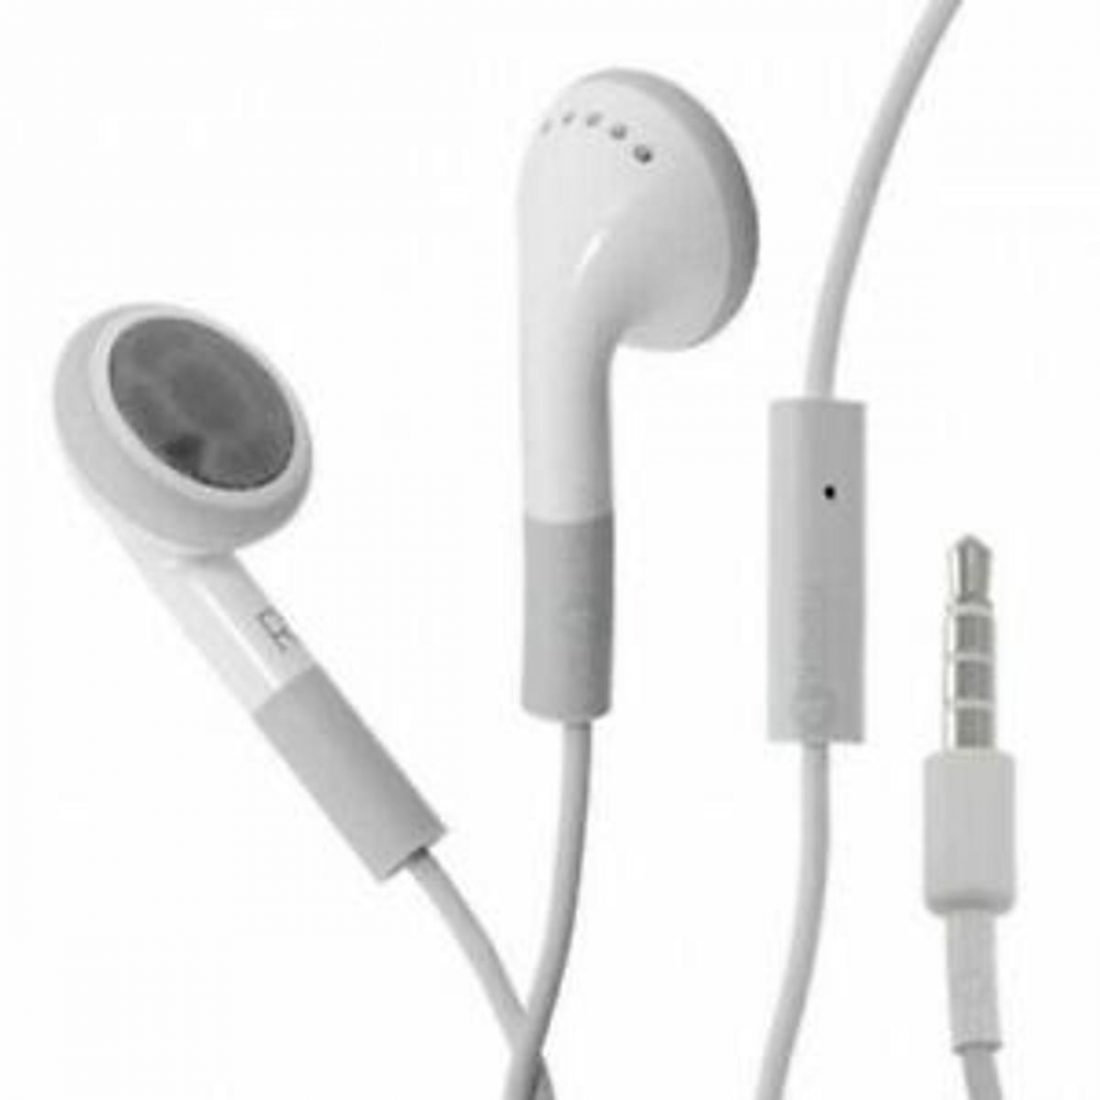 Original iPod Earbuds (From: ebay.com)